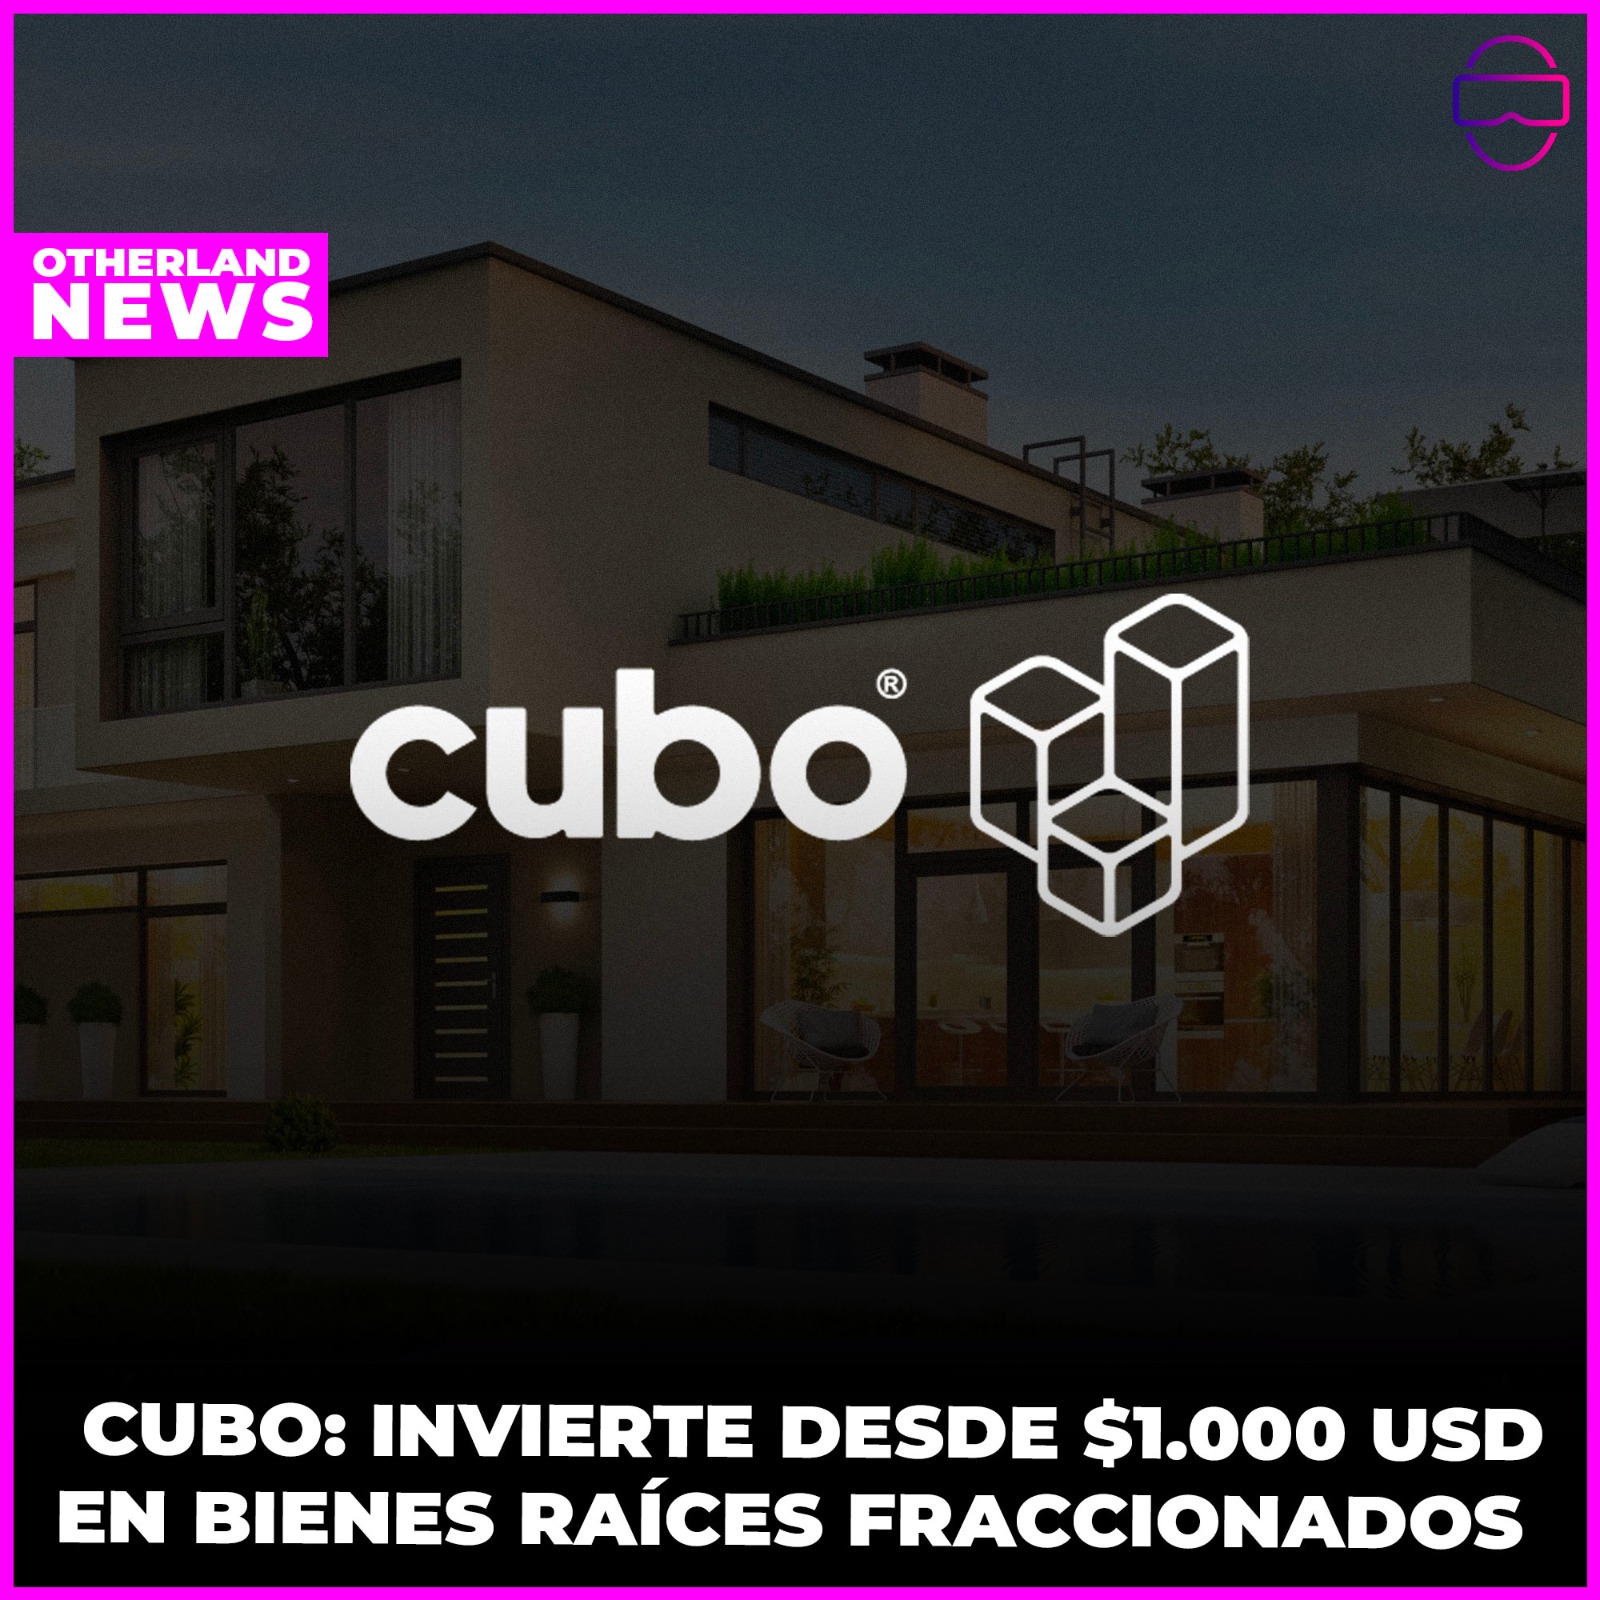 OTHERLAND : CUBO: La revolución de la Inversión en Bienes Raíces Fraccionados y Diversificados - Invierte desde $1.000 USD 